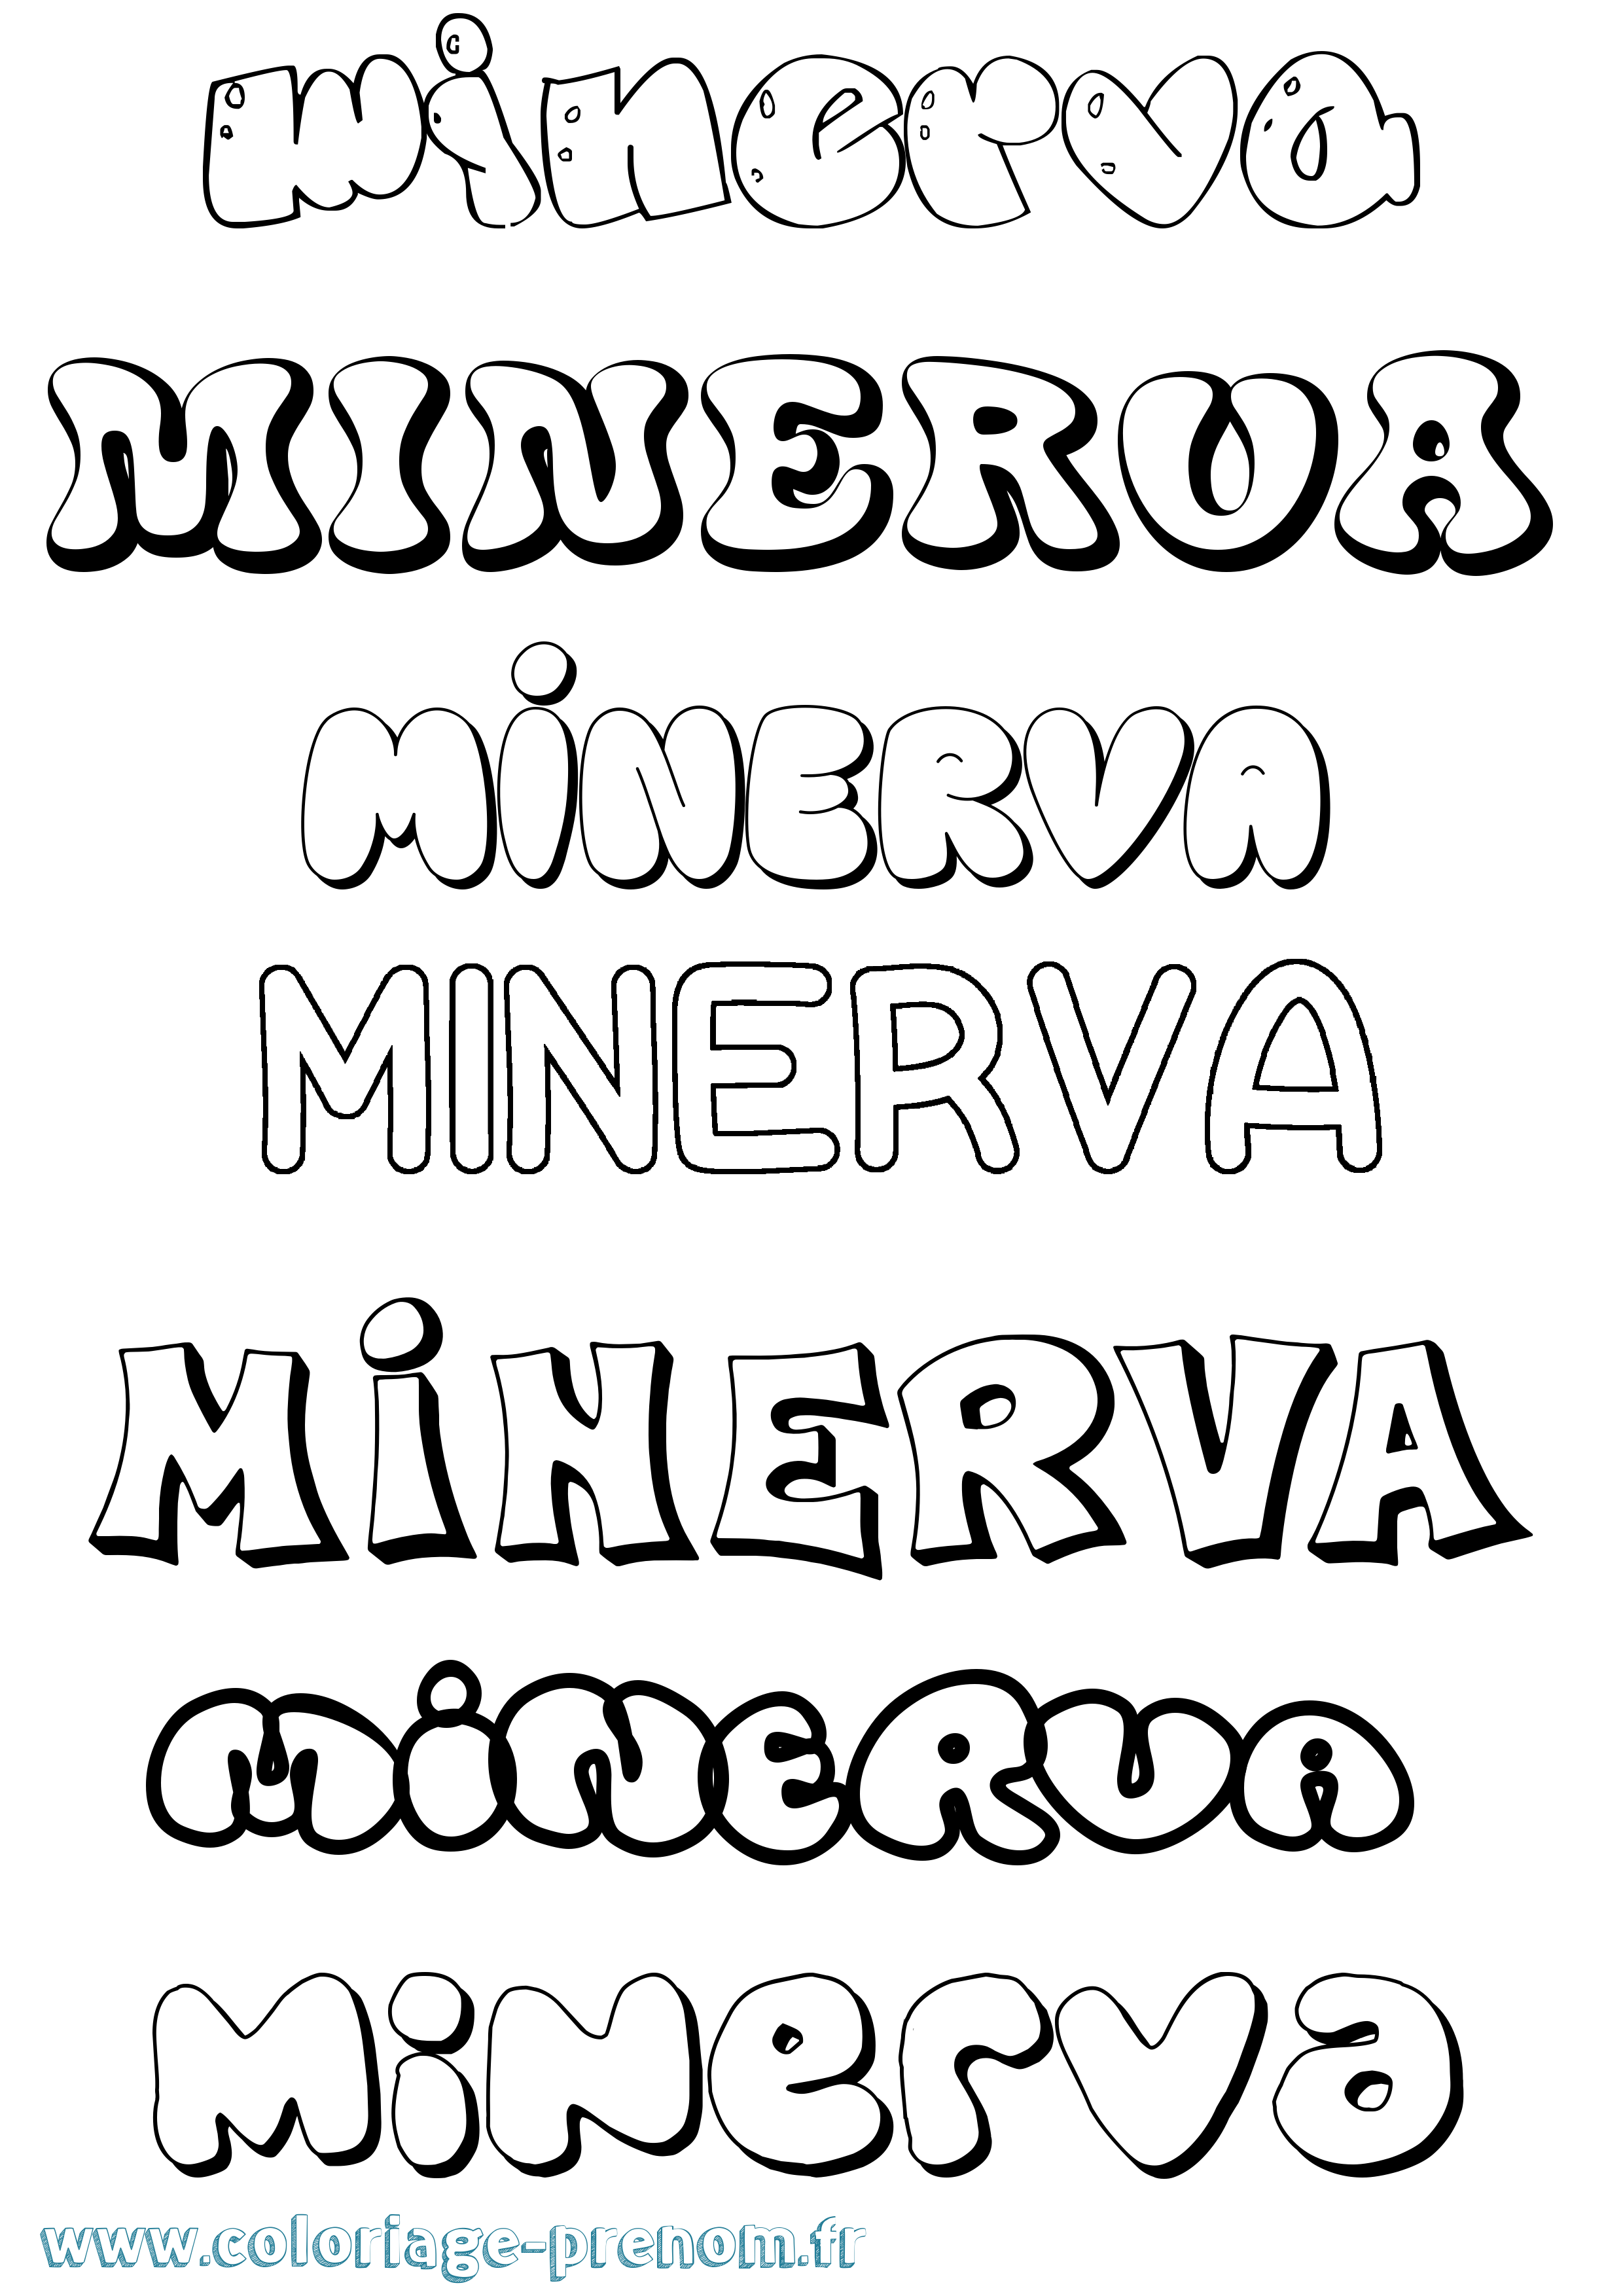 Coloriage prénom Minerva Bubble